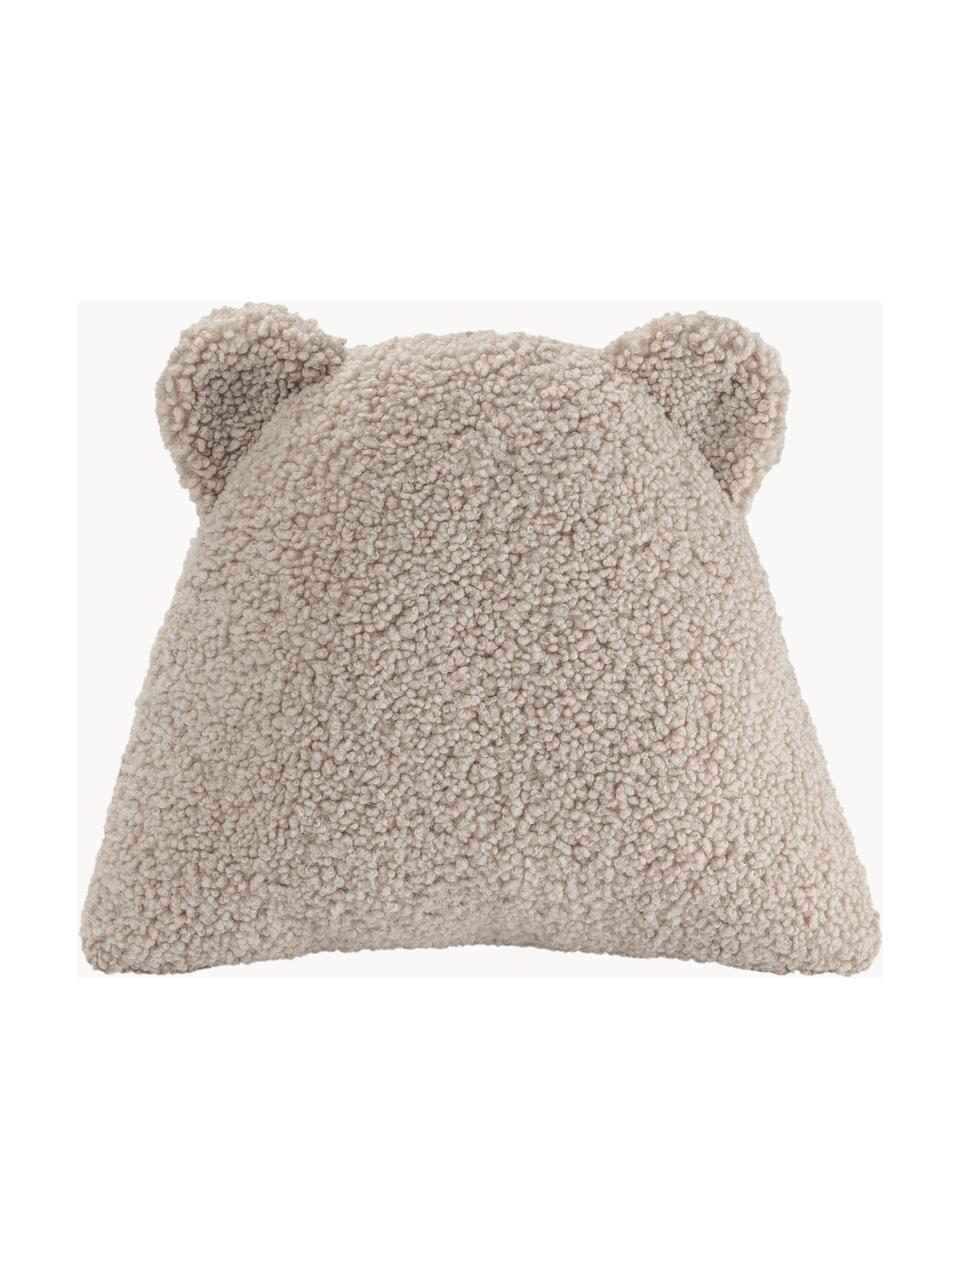 Poduszka do przytulania Teddy Bear, Tapicerka: Teddy (100% poliester), Jasny beżowy, S 40 x D 37 cm